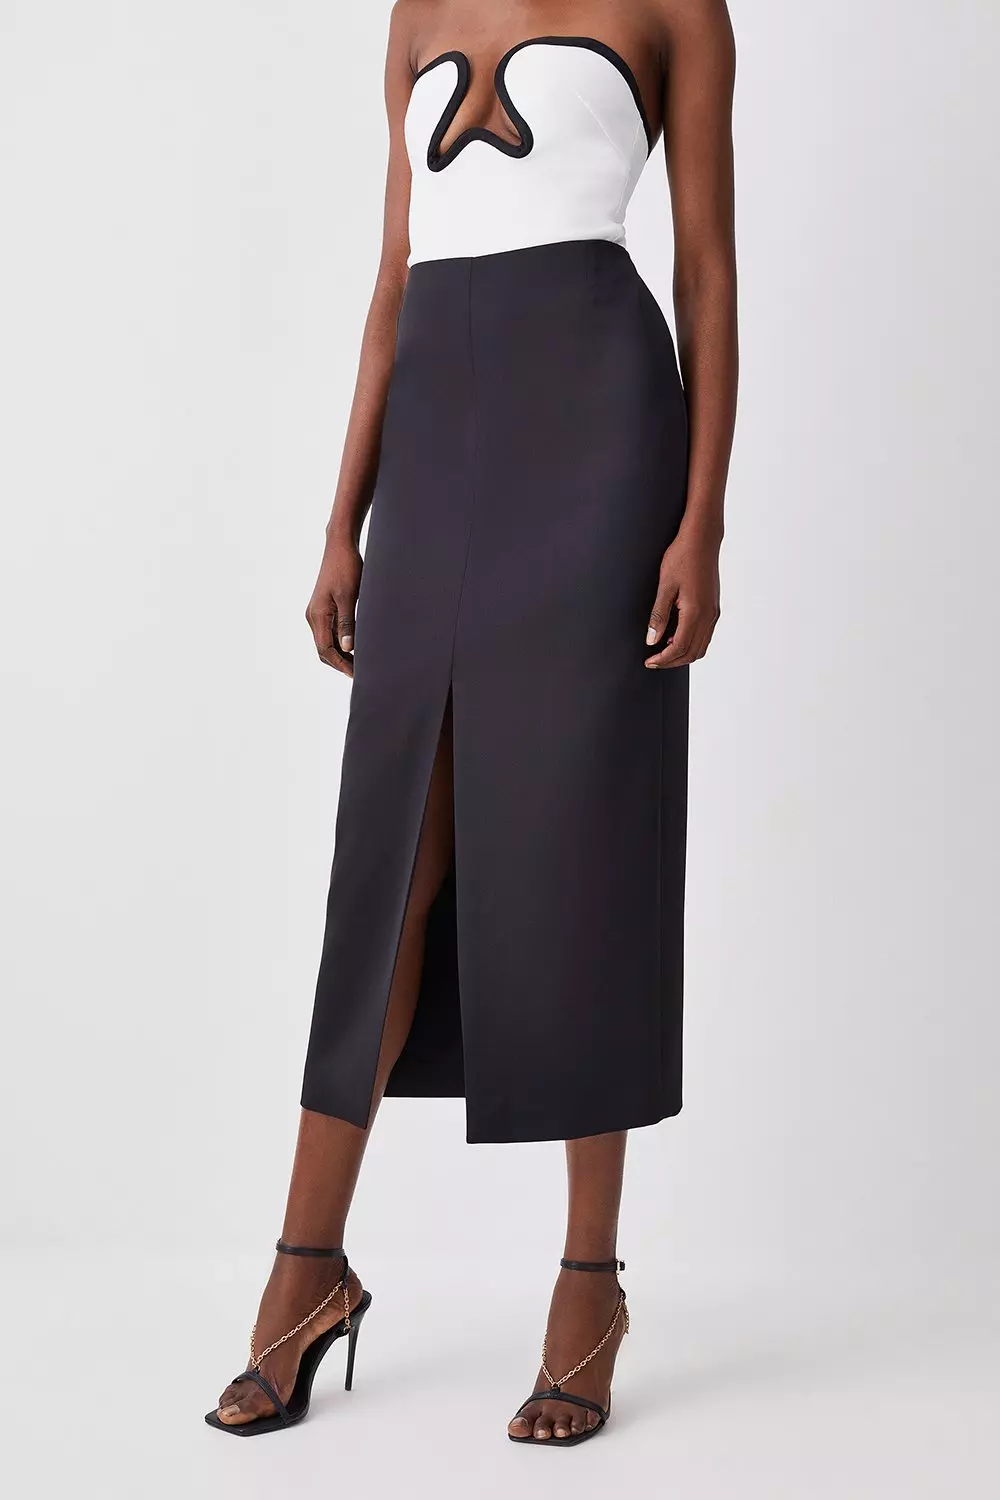 Satin Low Waist Straight Maxi Skirt | Karen Millen